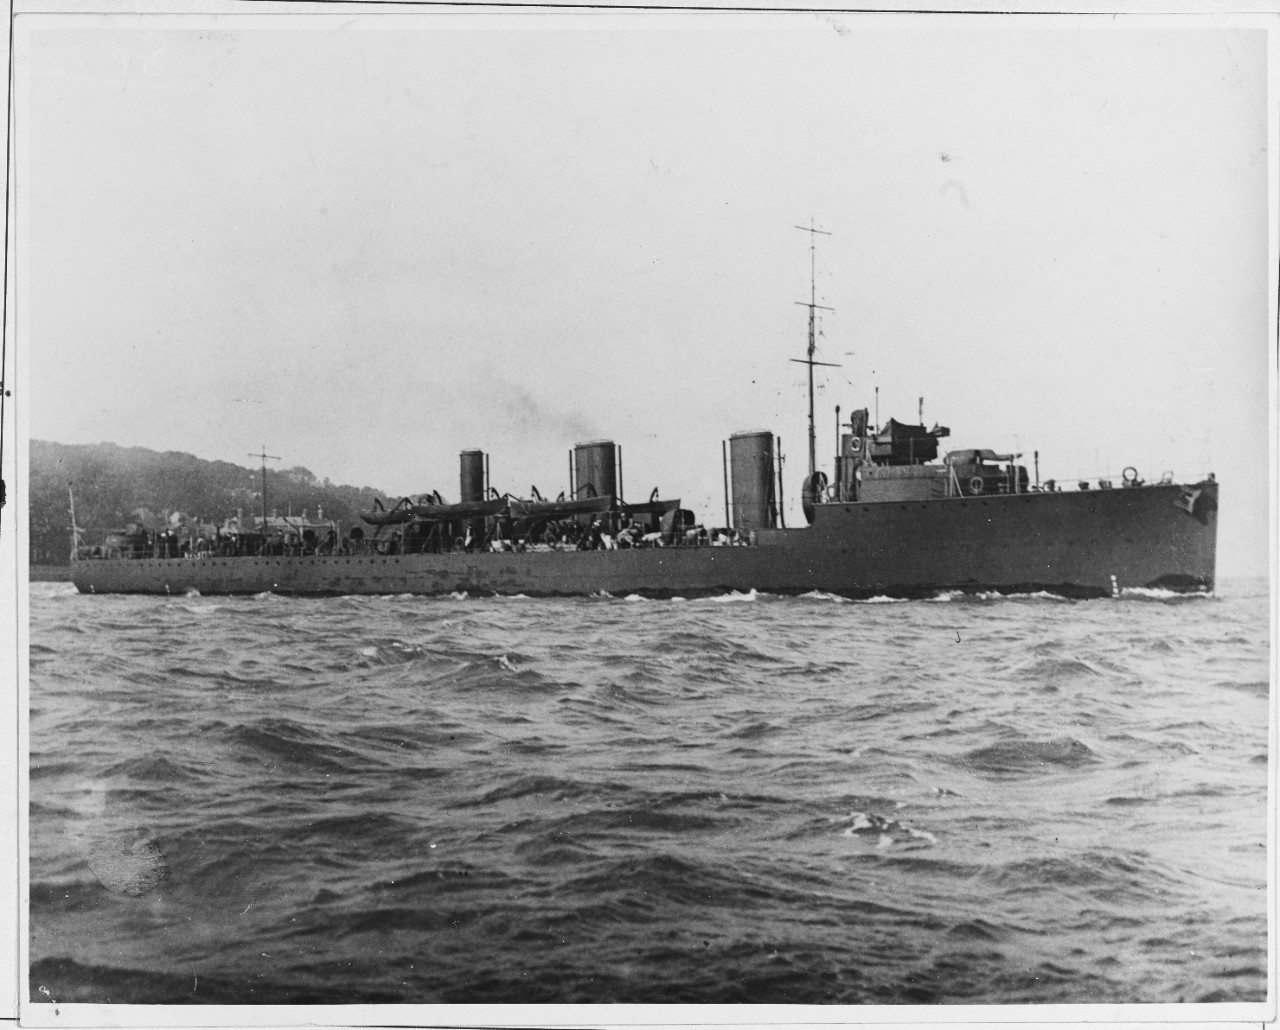 HMS BASILISK